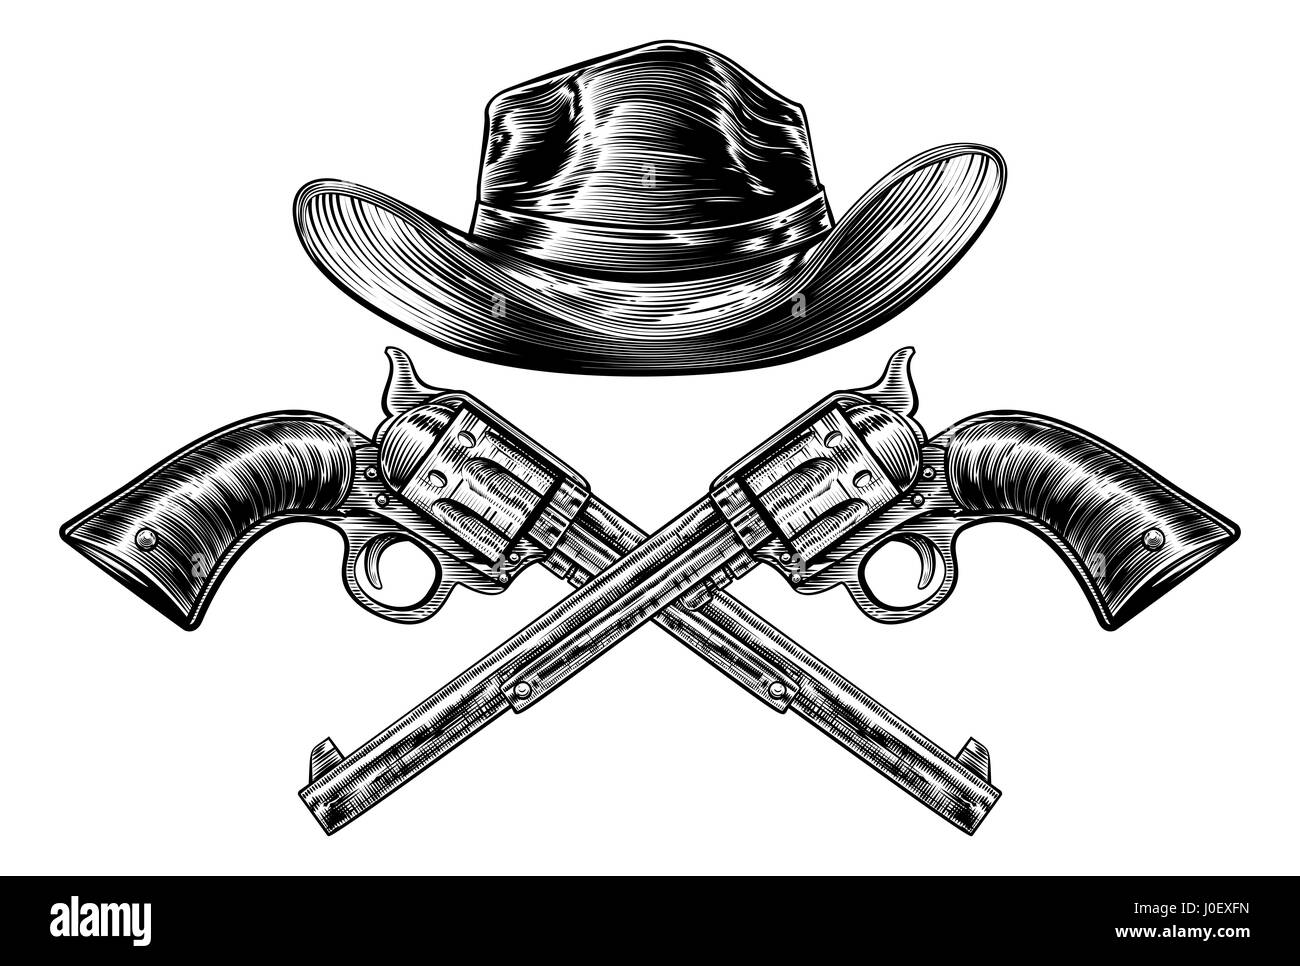 Un sombrero de vaquero del oeste y un par de pistolas pistola cruzado en un estilo vintage grabado grabado Foto de stock